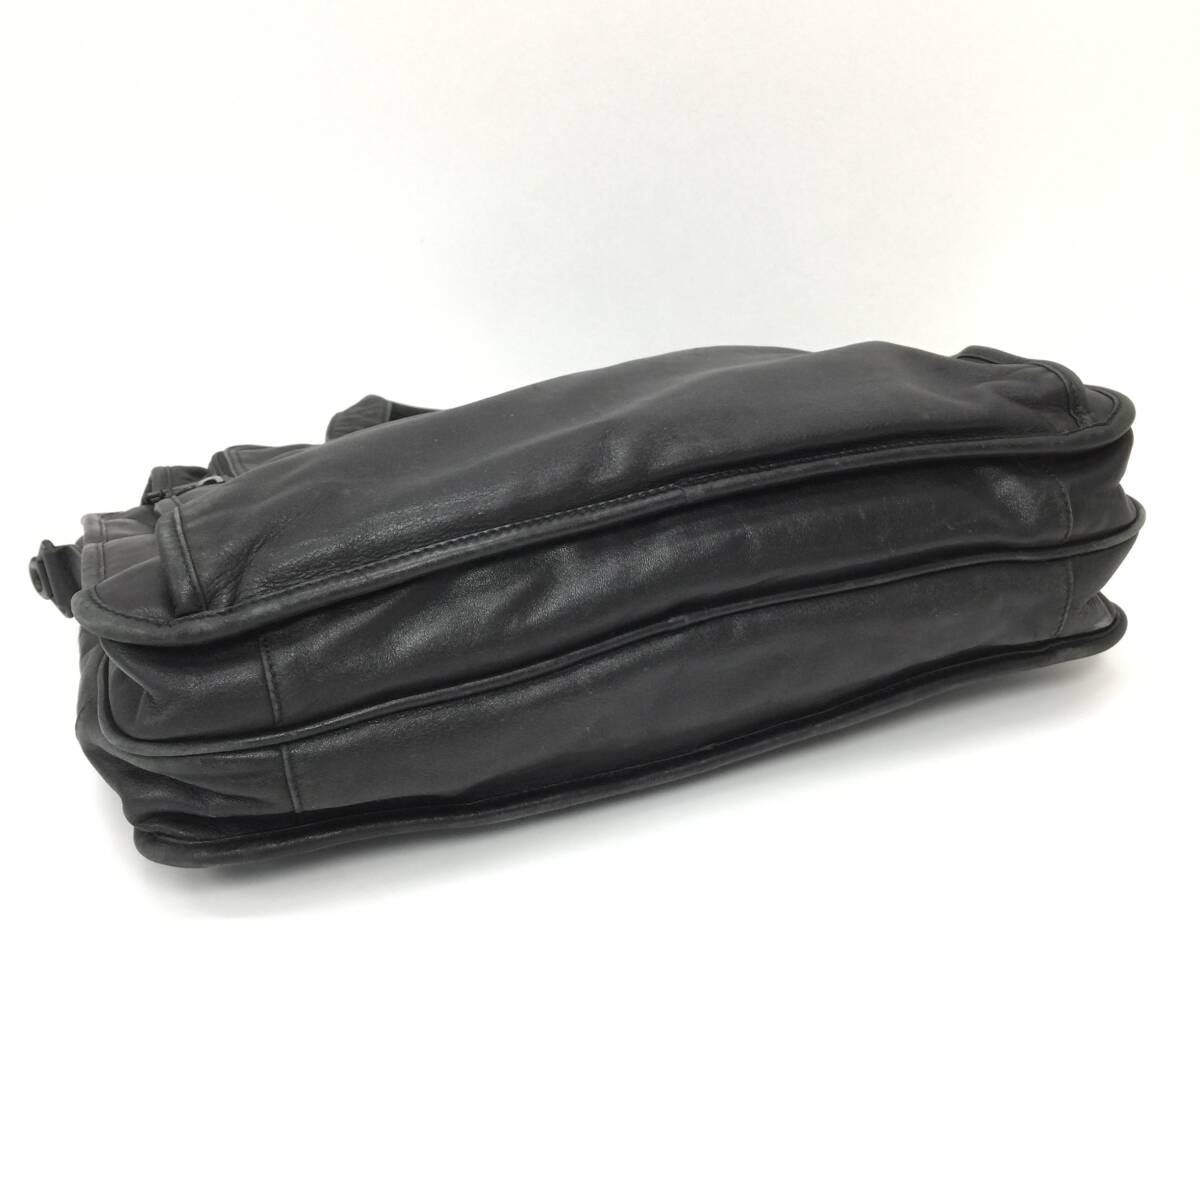 183 TUMI トゥミ レザー ビジネス バッグ 書類鞄 ブリーフケース トート 通勤 本革 皮革 バッグ A4 メンズ ブラック 黒 ストラップ欠品の画像4